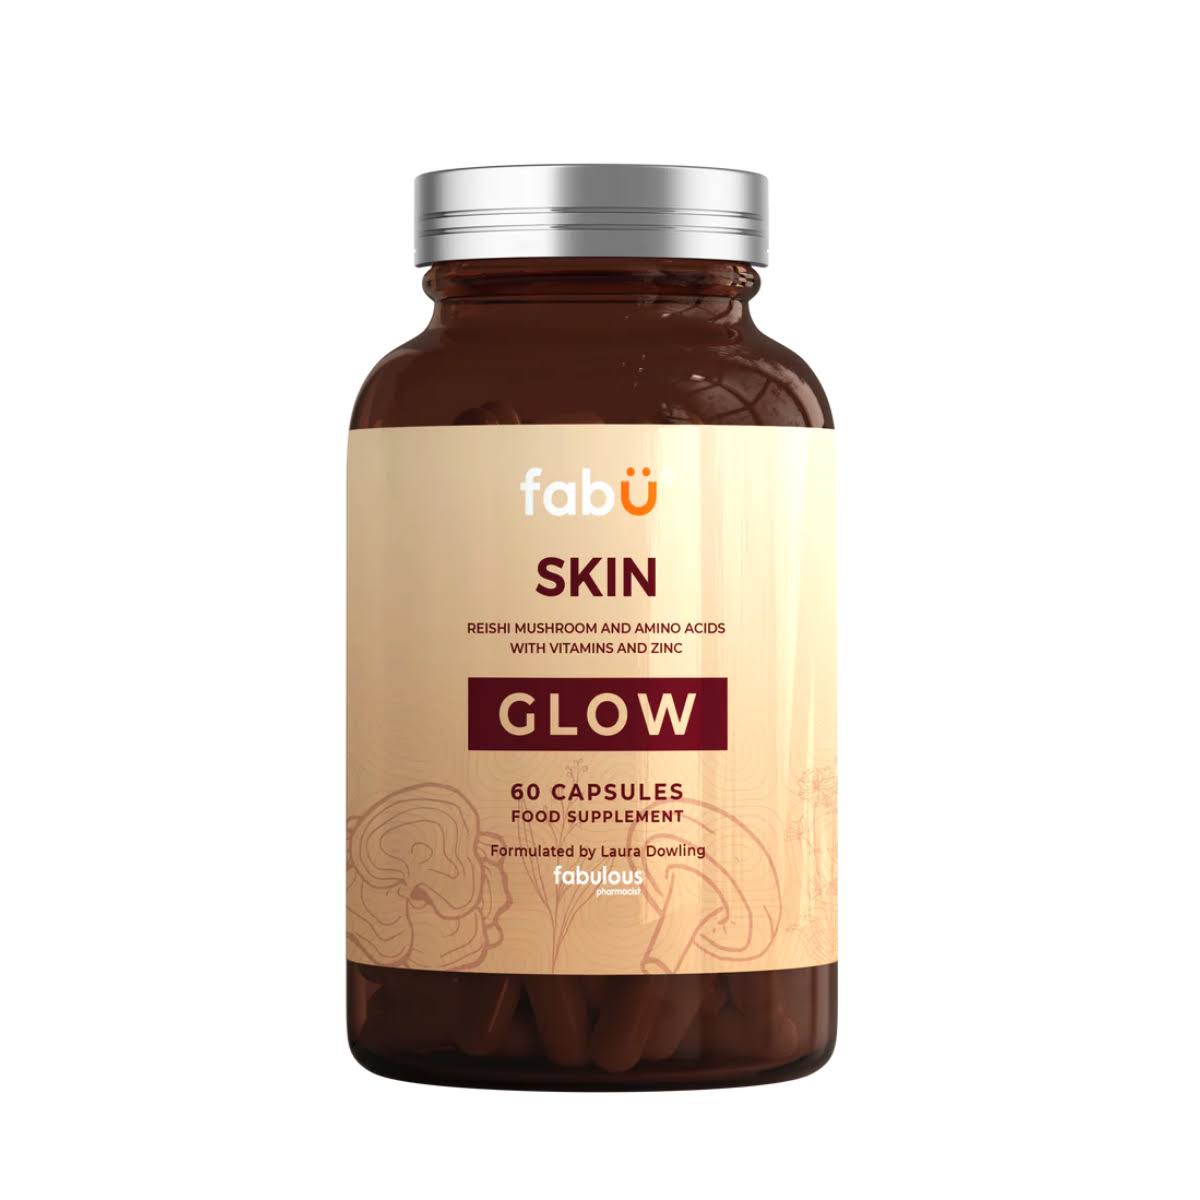 fabÜ - Skin Glow